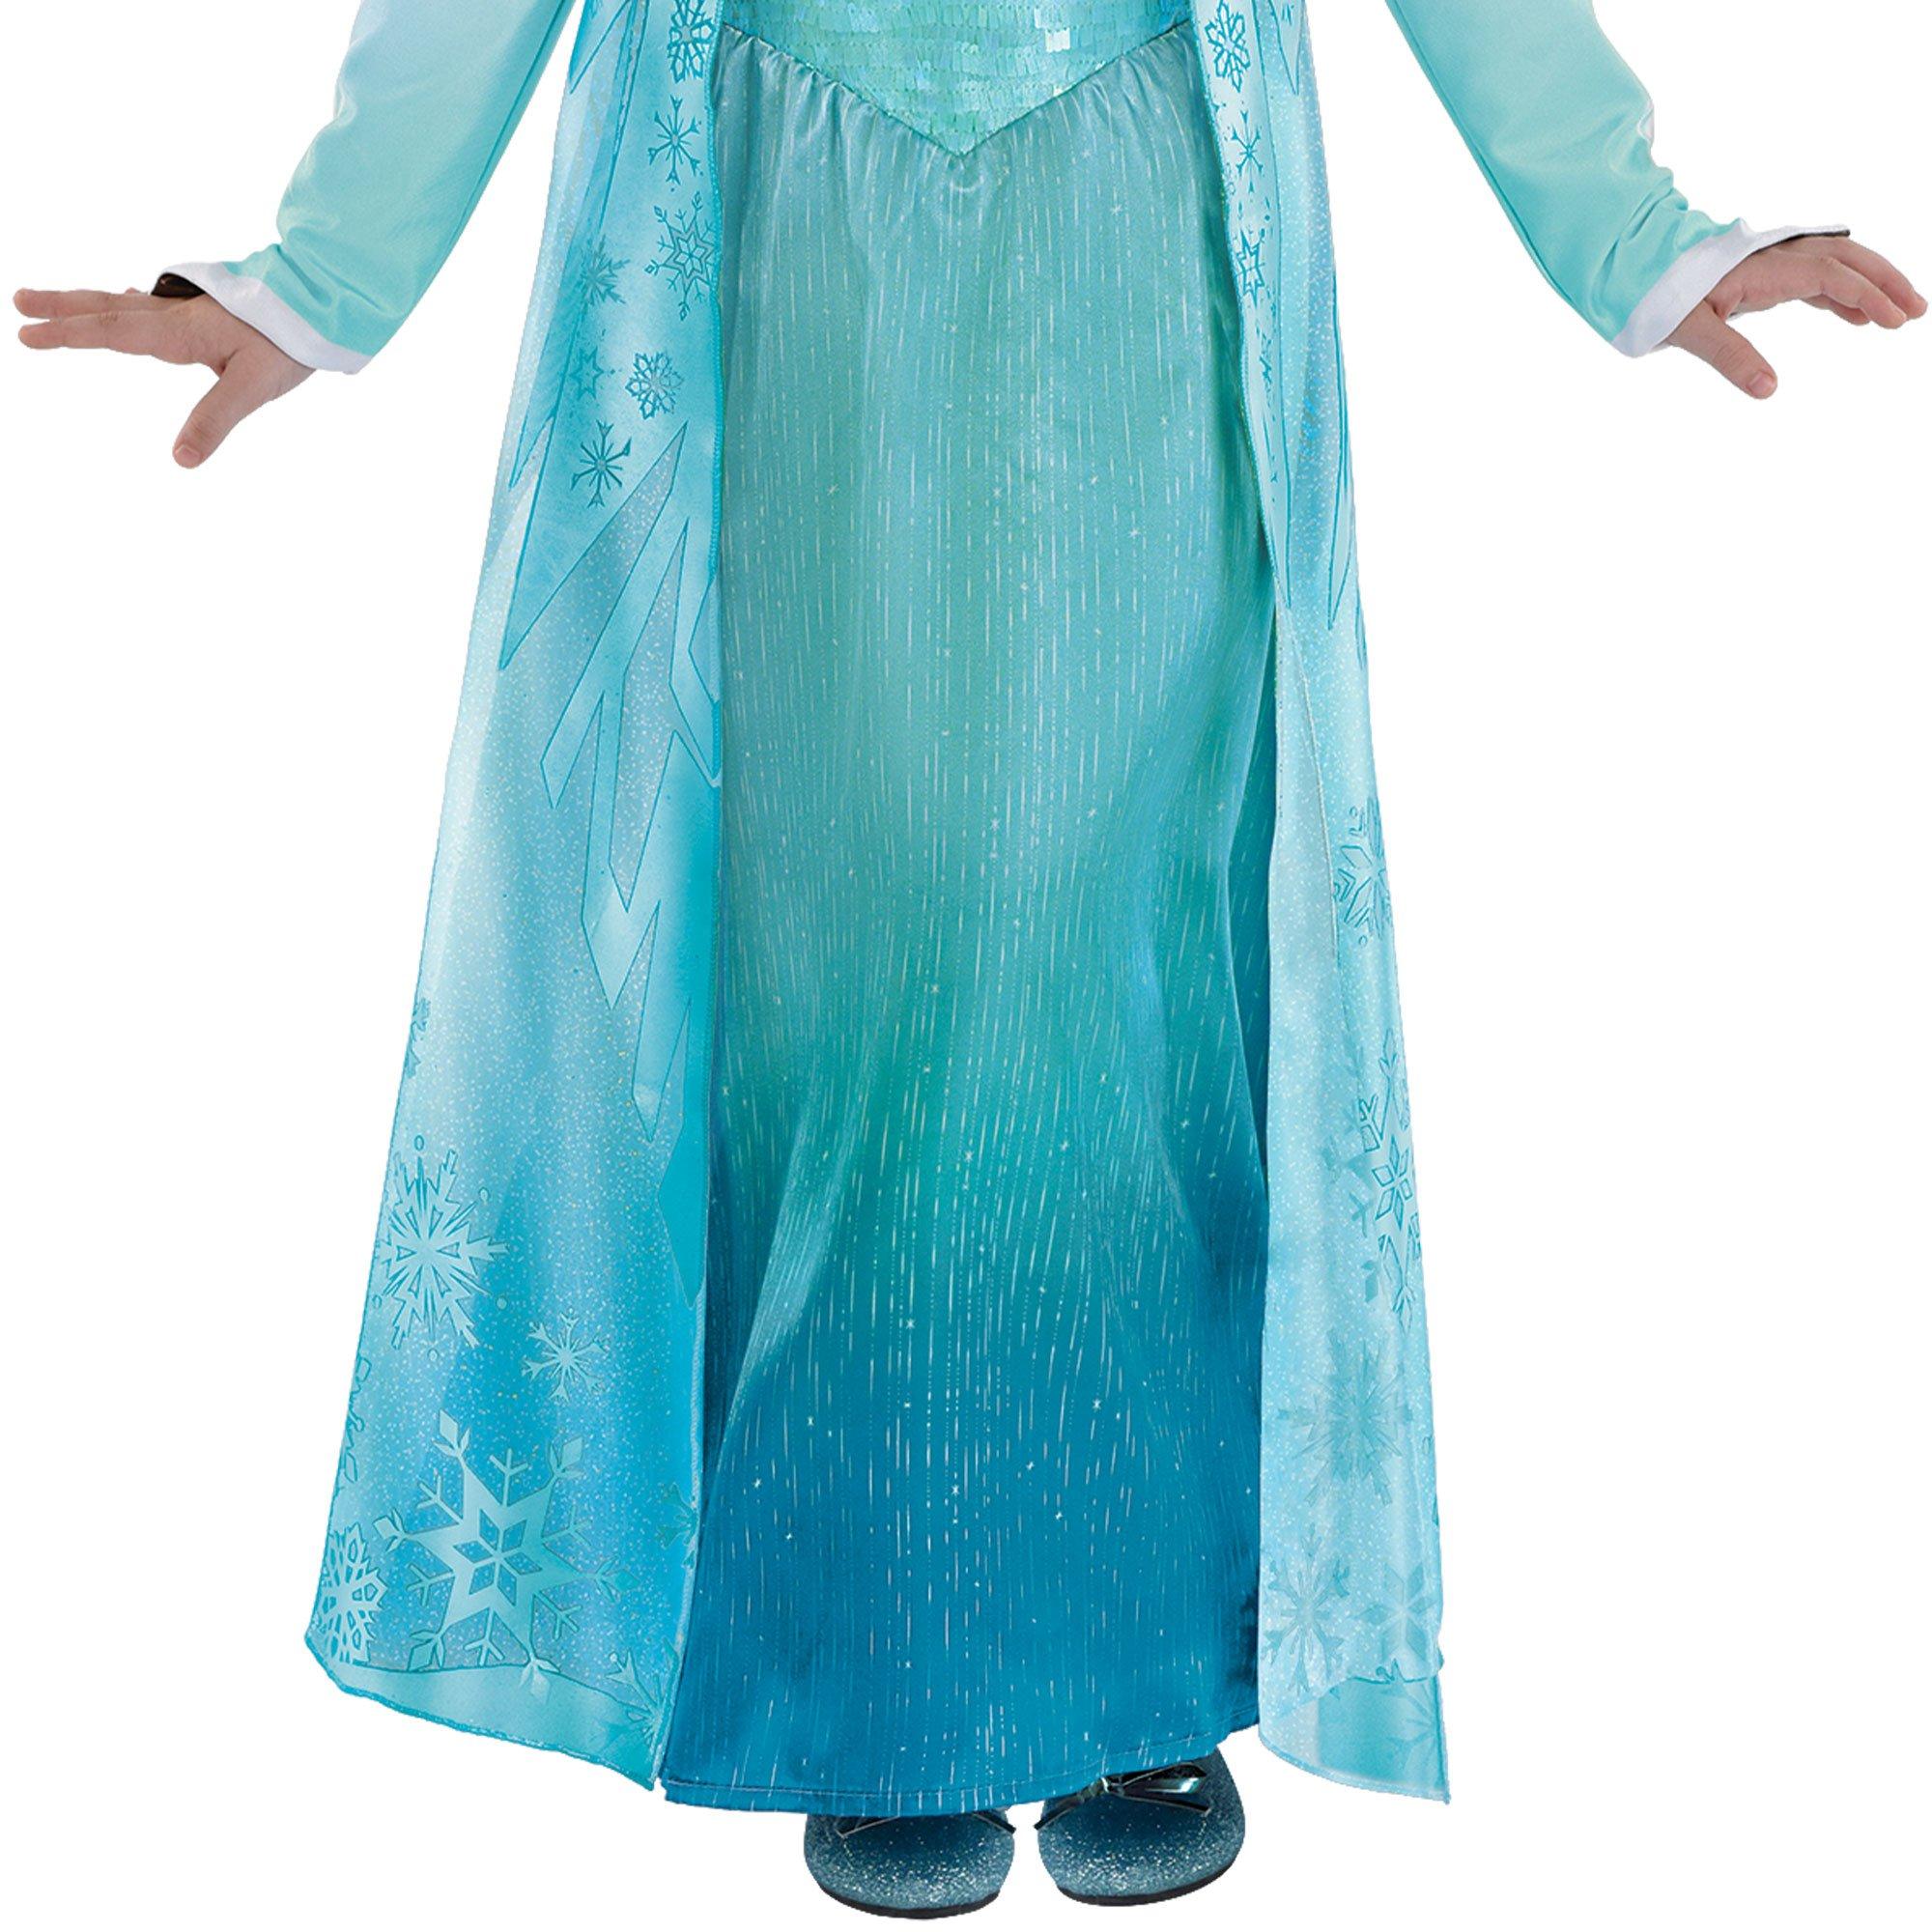 Elsa Costume For Kids, Frozen